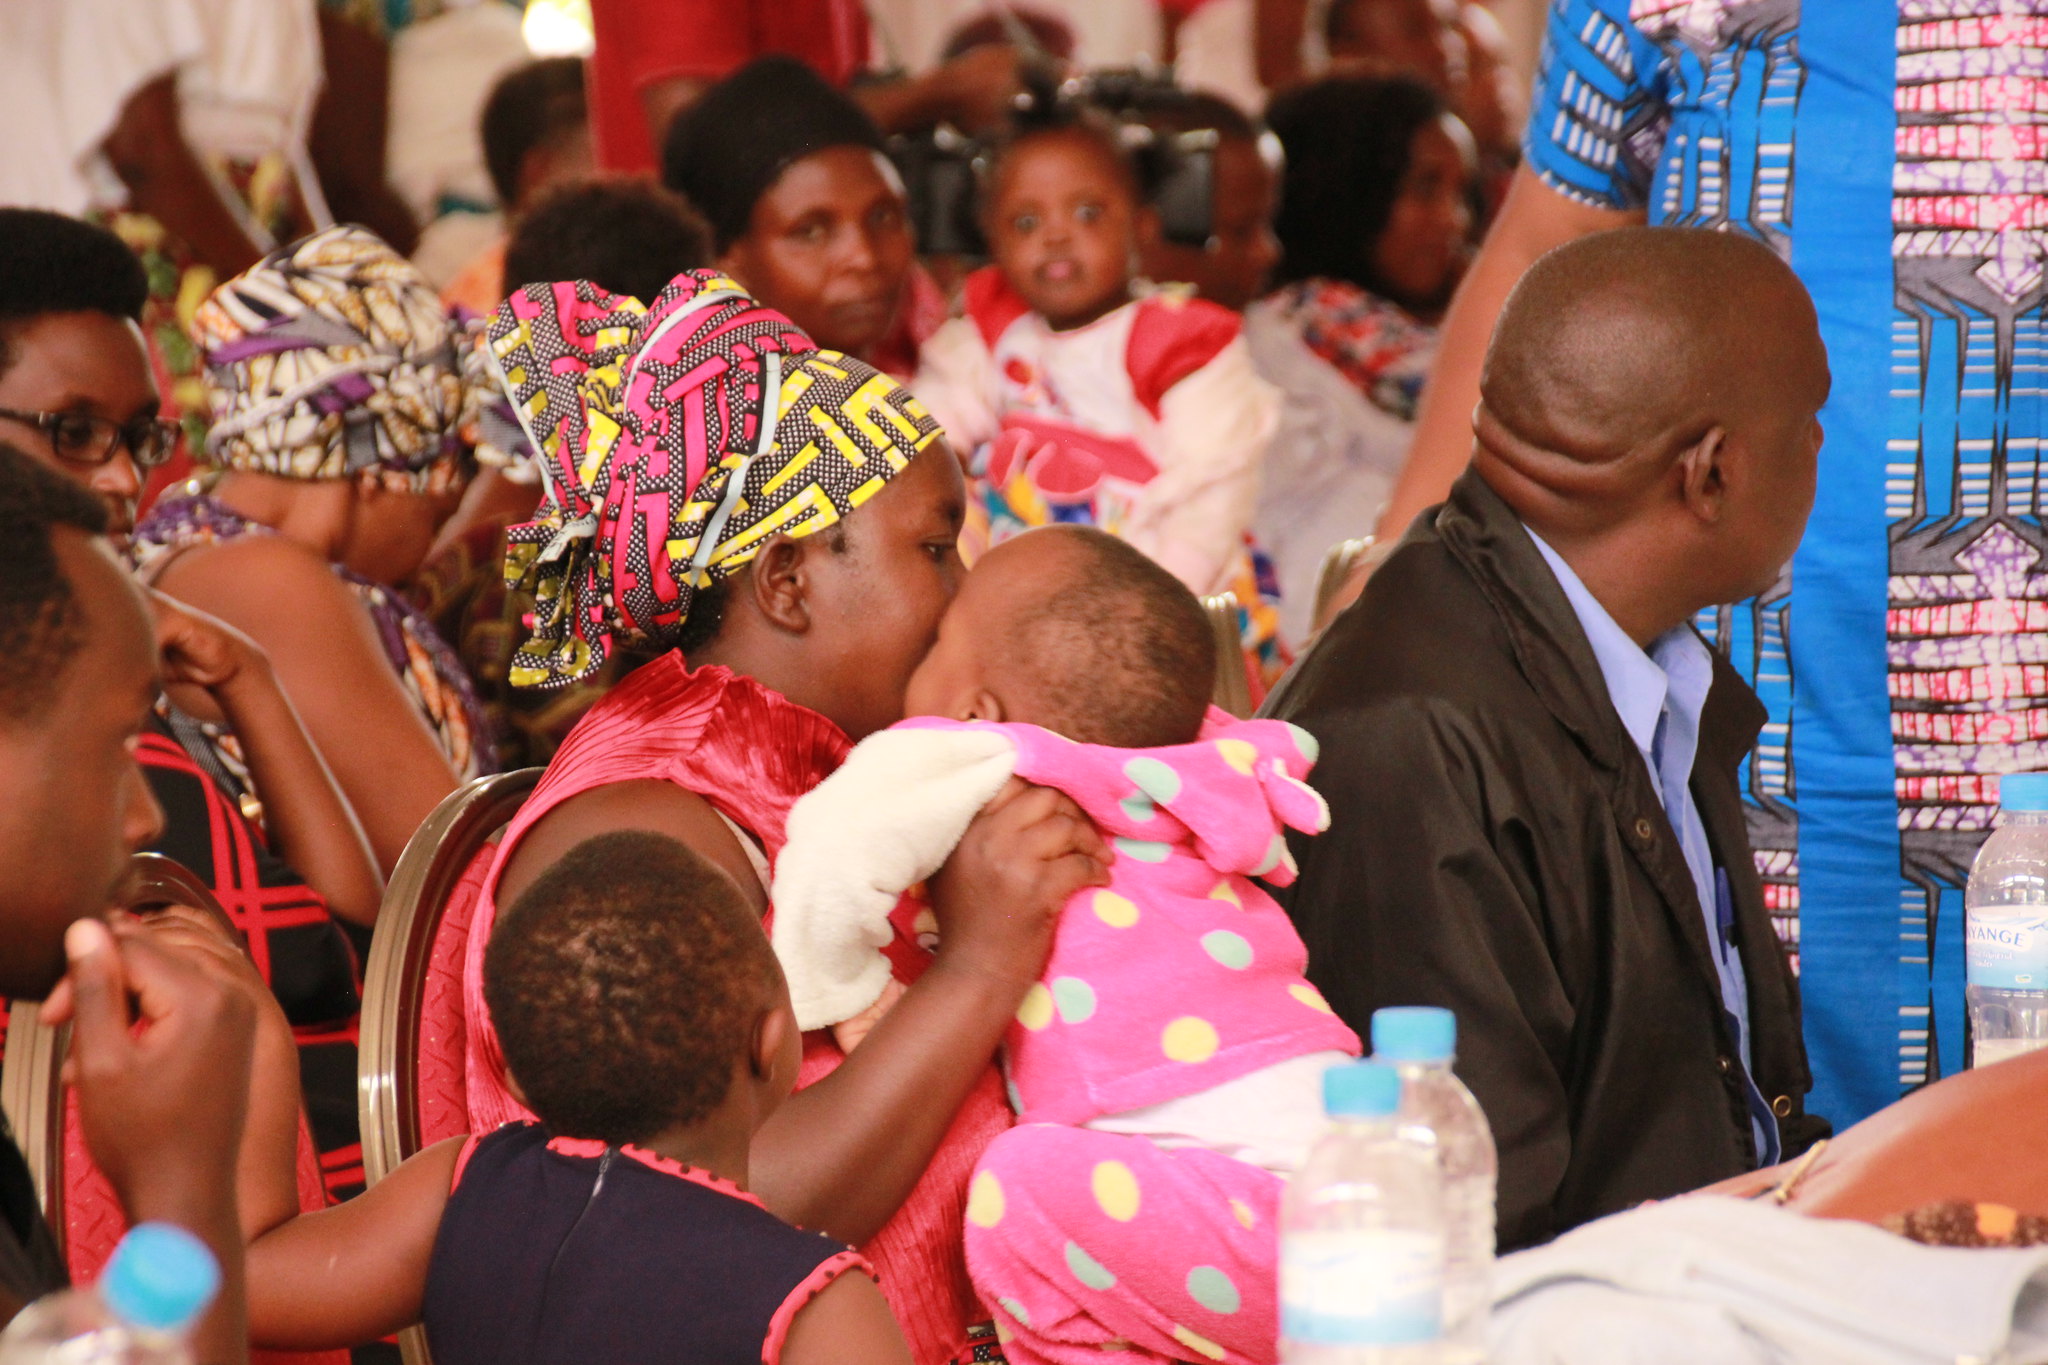 More Rwandans Prefer Having Fewer Children- Health Survey